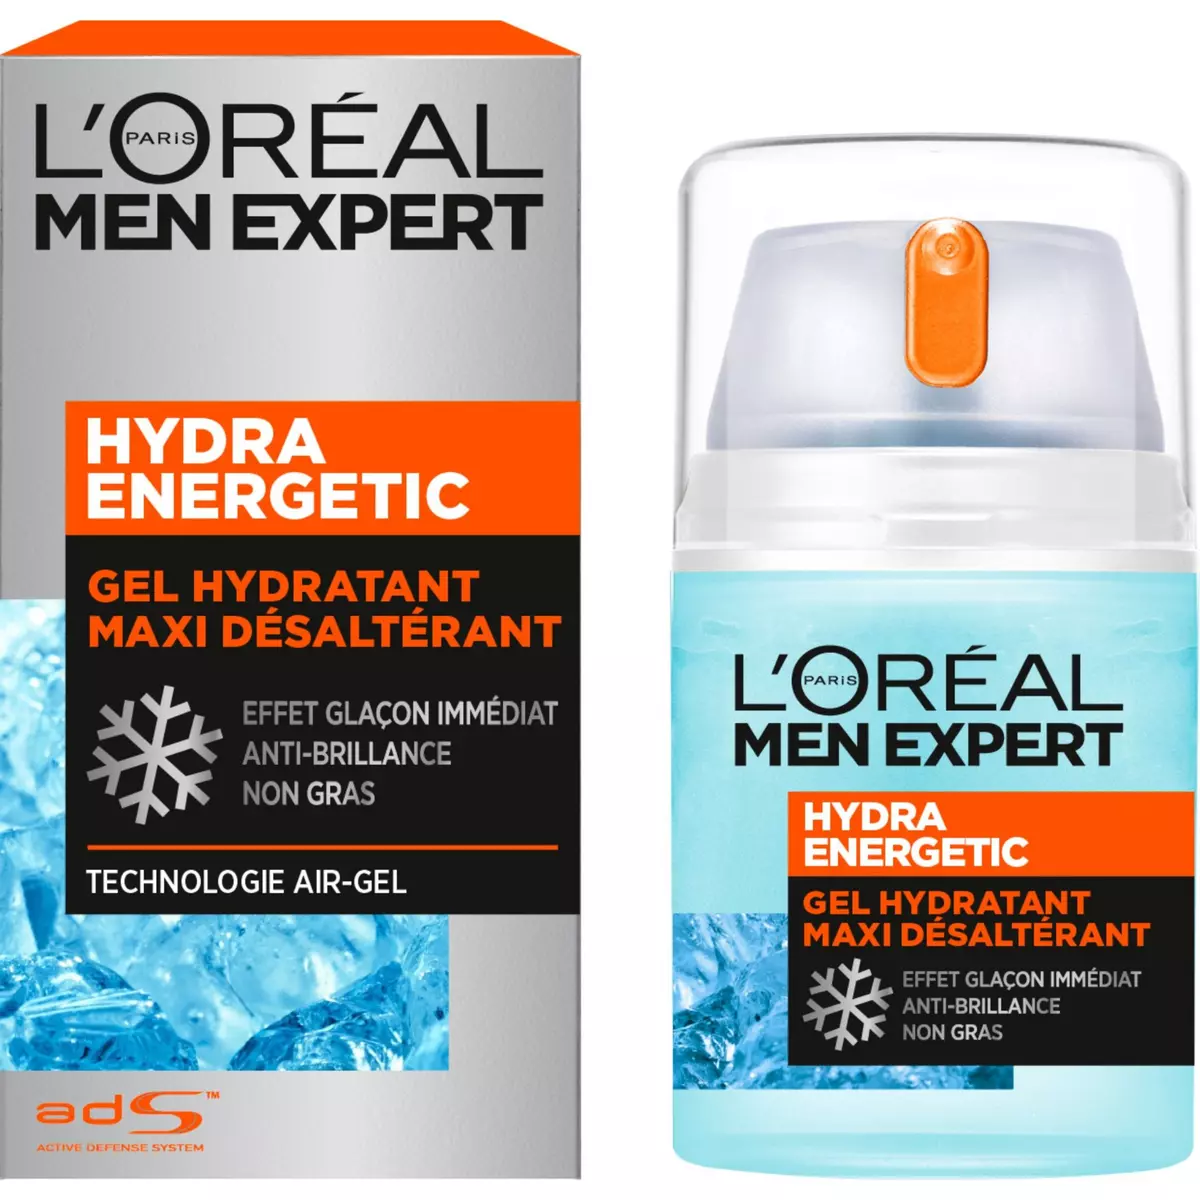 L'OREAL Men Expert Hydra Energetic gel hydratant maxi désaltérant anti-brillance 50ml